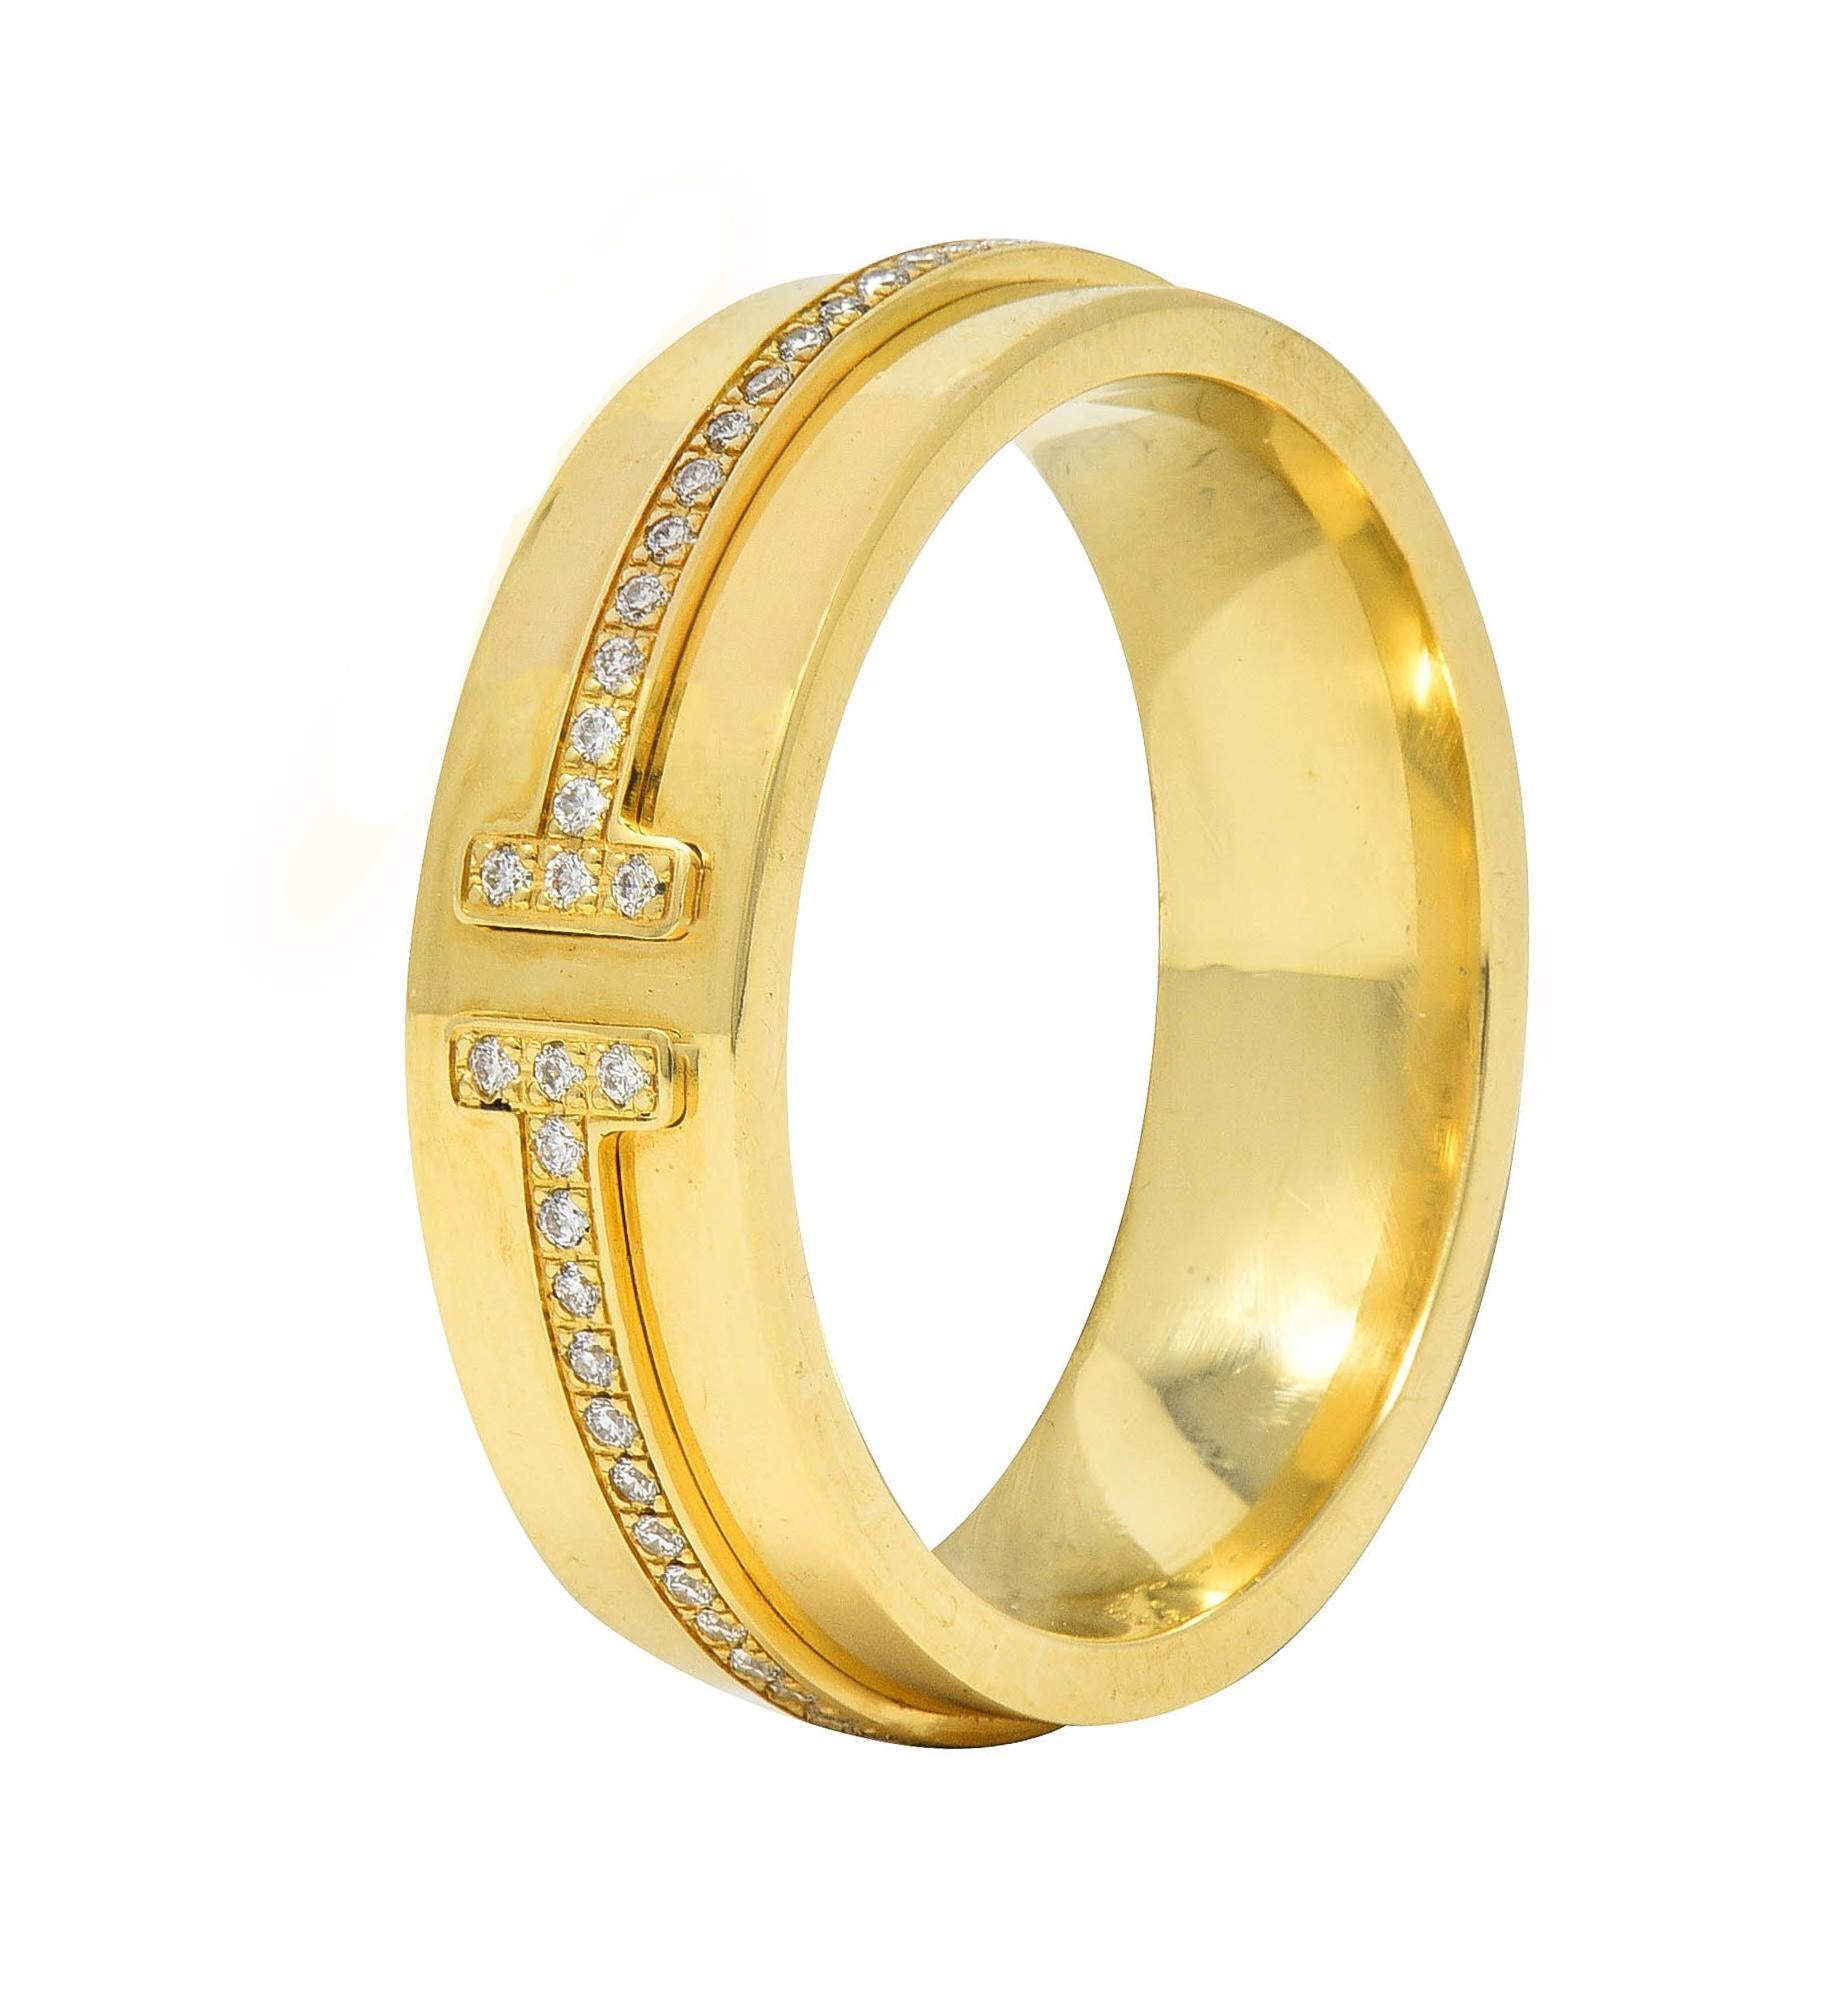 Le bracelet en or est large et comporte une bande surélevée terminée par un motif en 